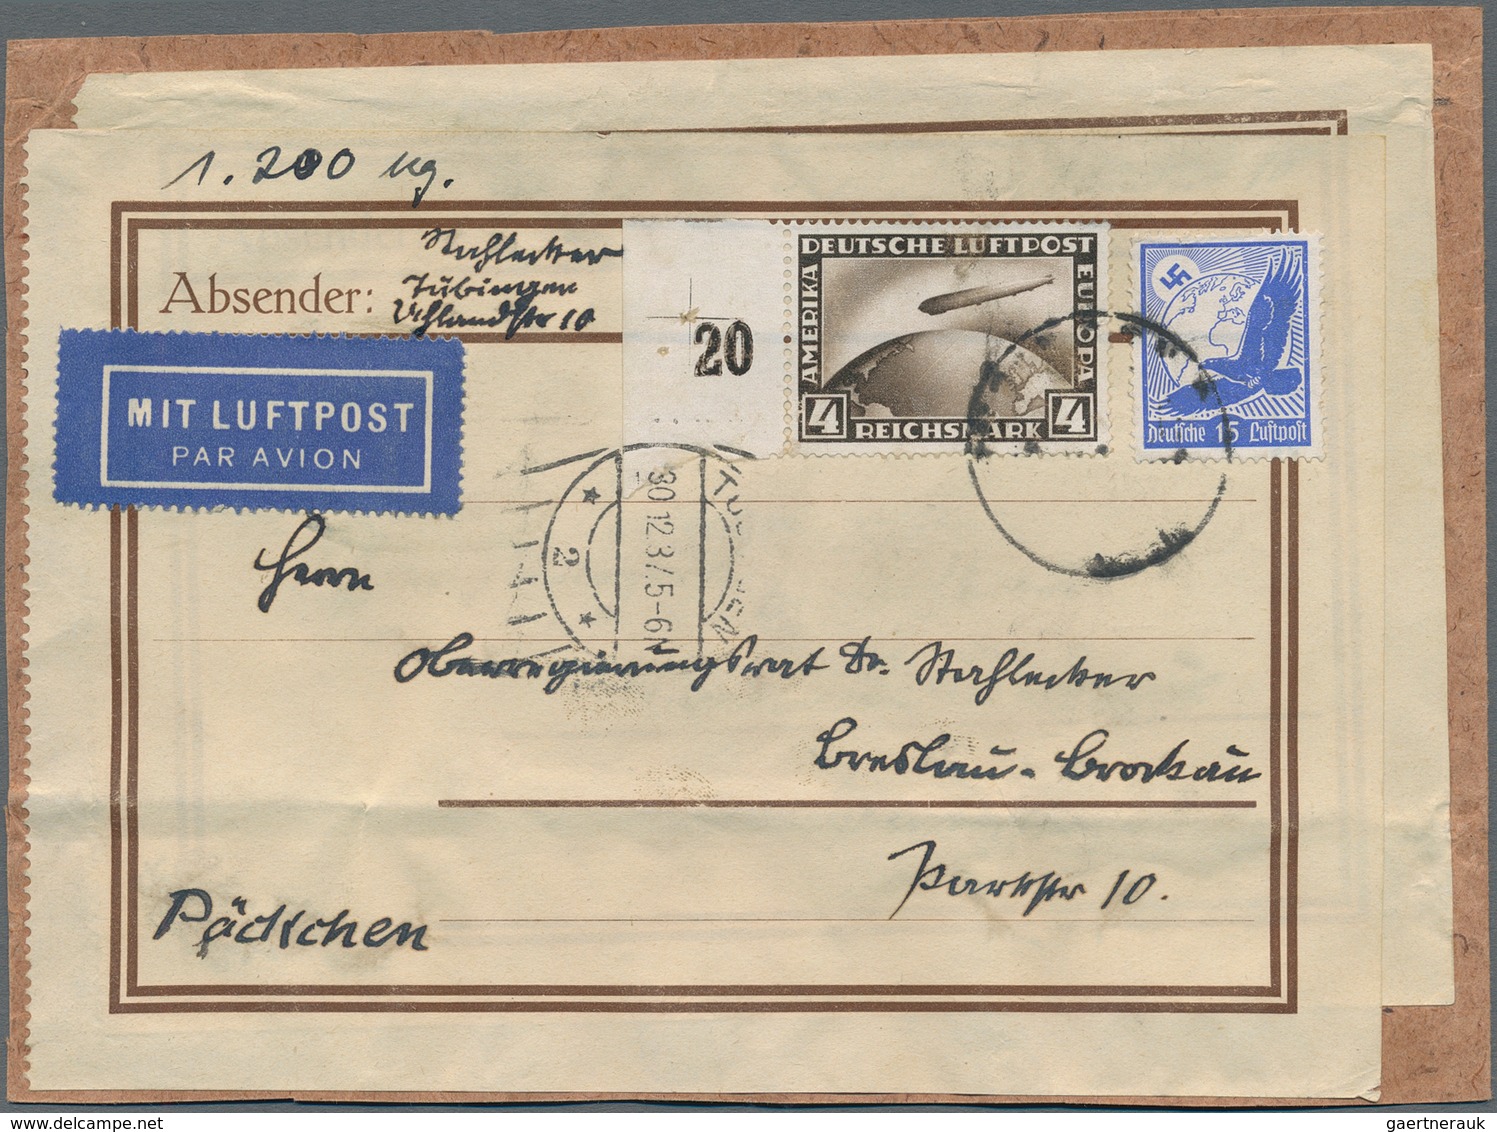 Flugpost Deutschland: 1924/1944, gehaltvoller Sammlungsbestand mit ca.60 Belegen, dabei viel Bedarfs